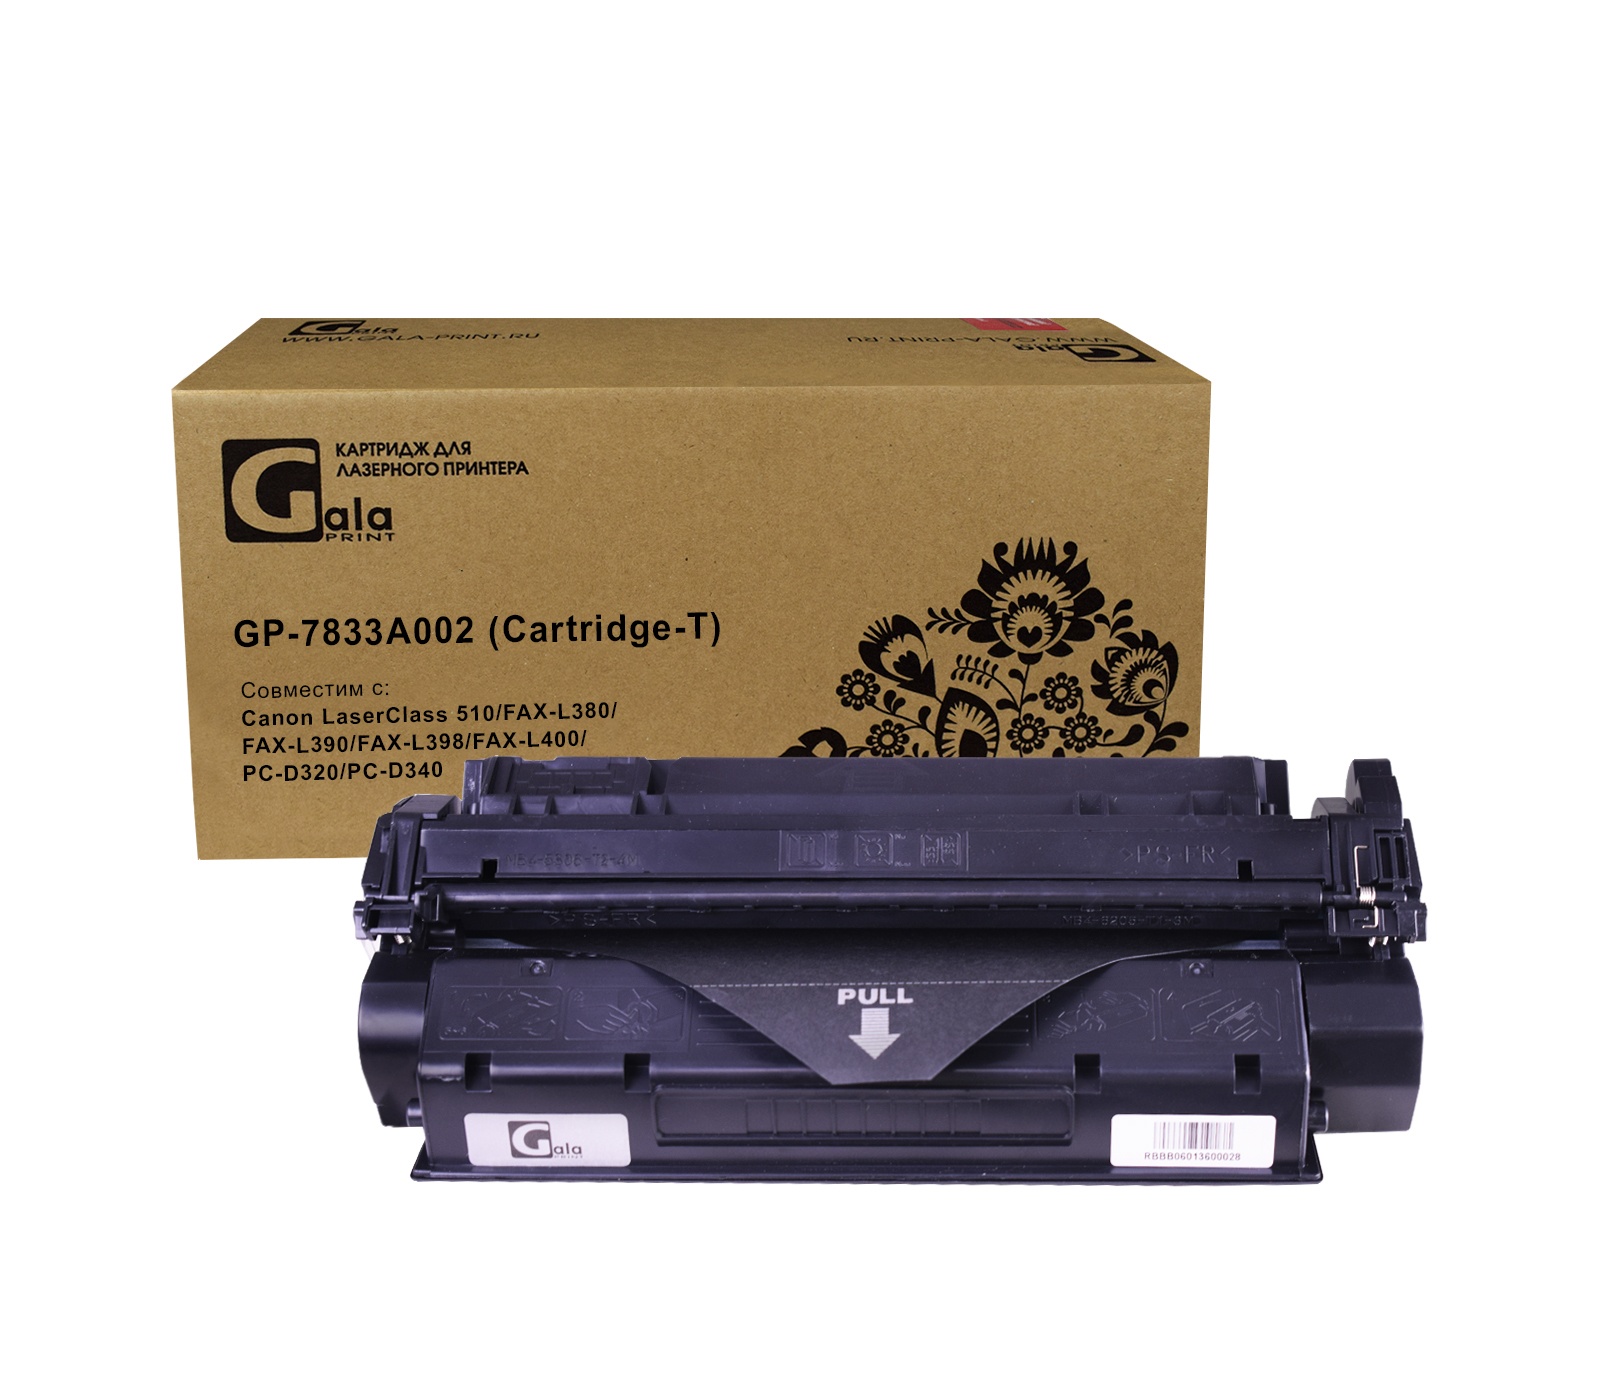 Картридж GP-7833A002 (Cartridge-T) для принтеров Canon LaserClass 510/FAX-L380/FAX-L390/FAX-L398/FAX-L400/PC-D320/PC-D340 3500 копий GalaPrint